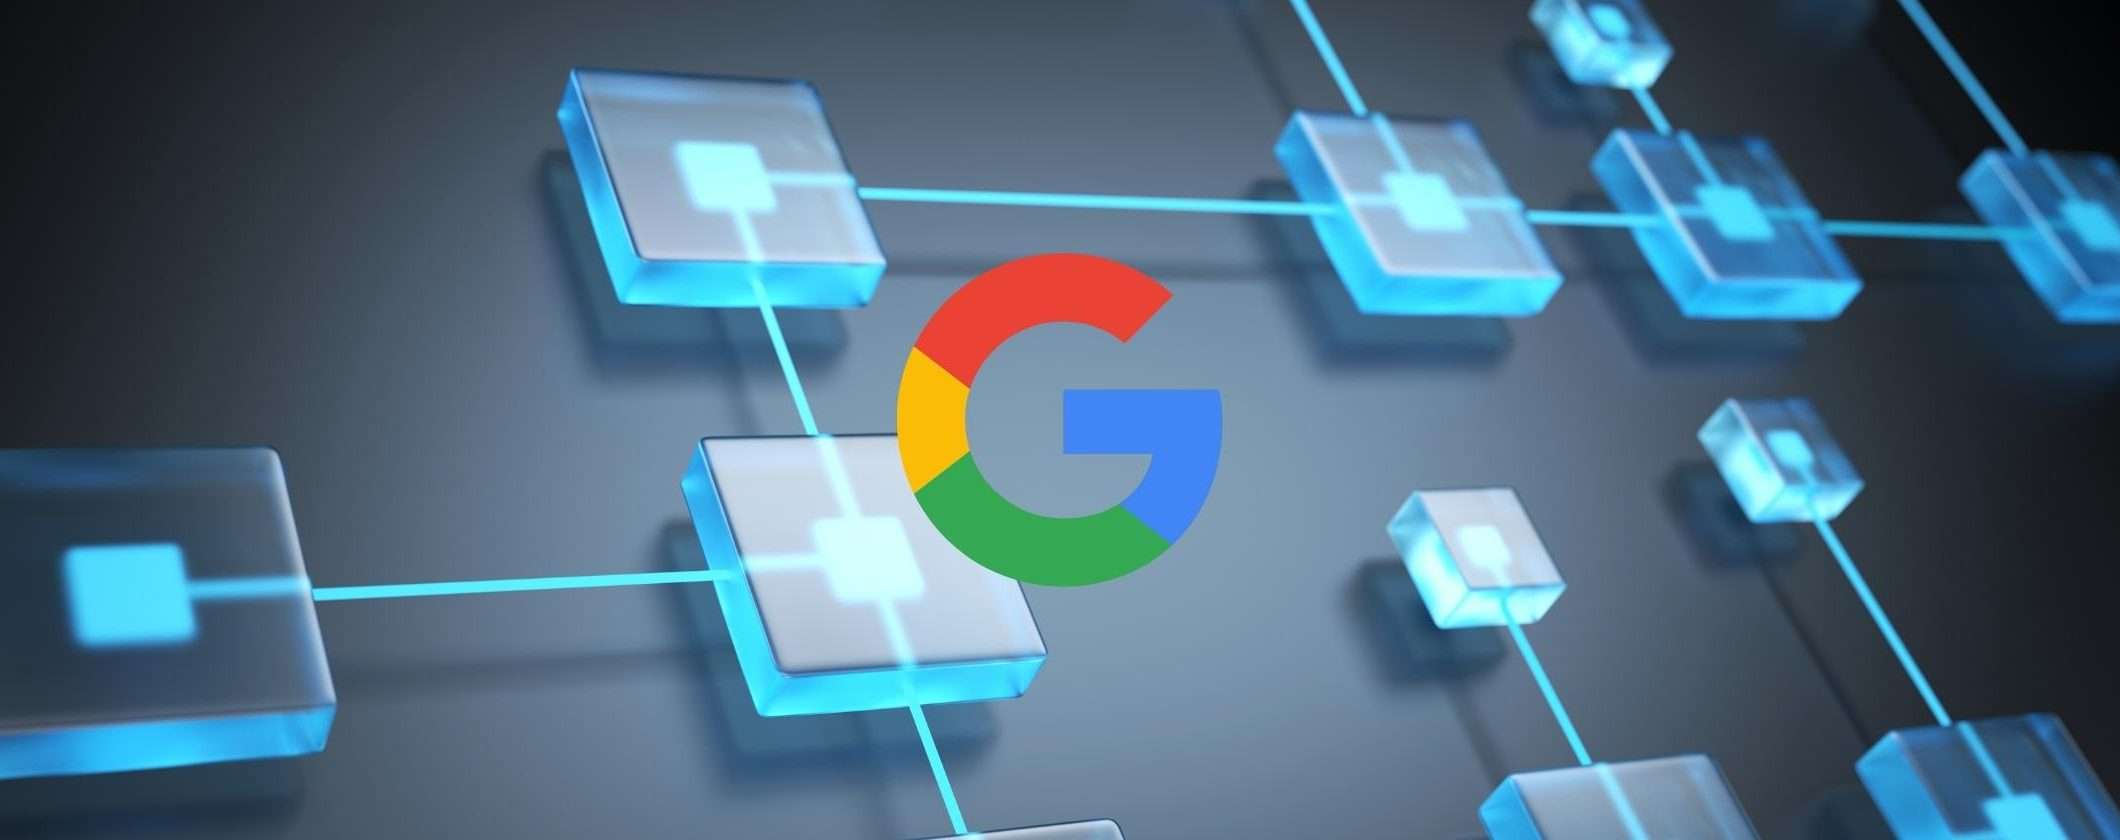 Google investe in società blockchain: il futuro è crypto